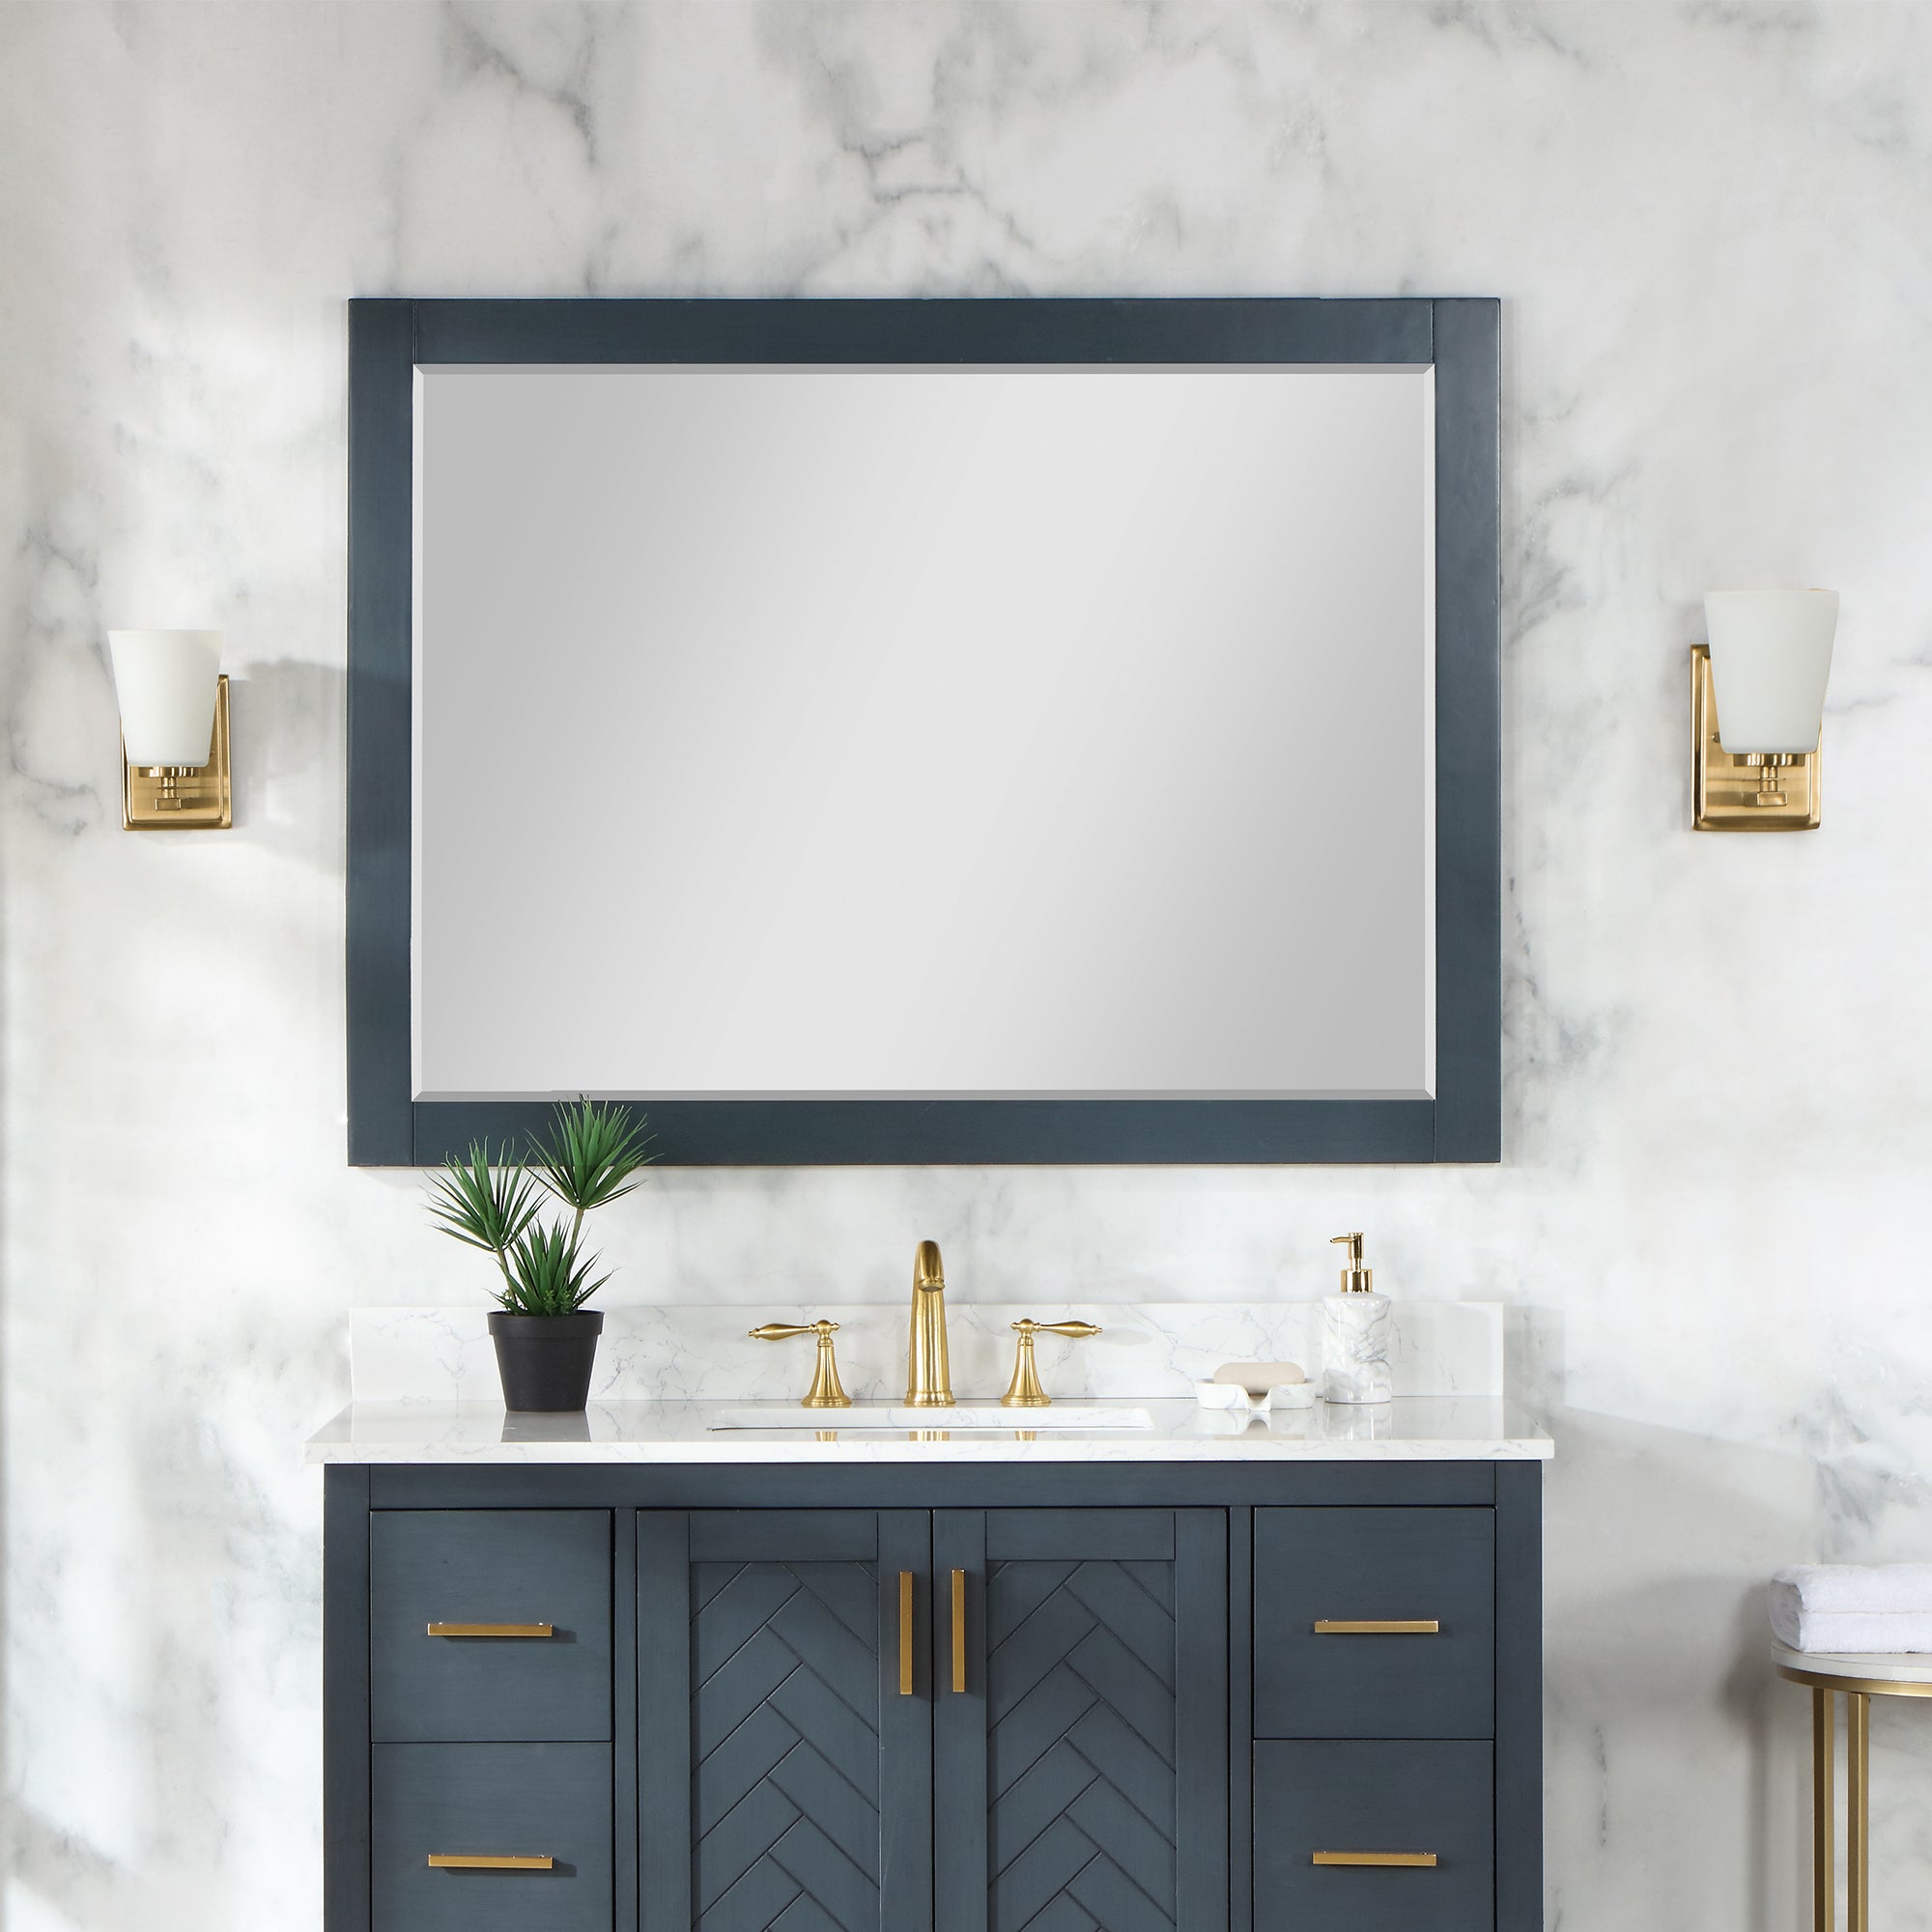 Maribella 48" Rectangular Bathroom Wood Framed Wall Mirror